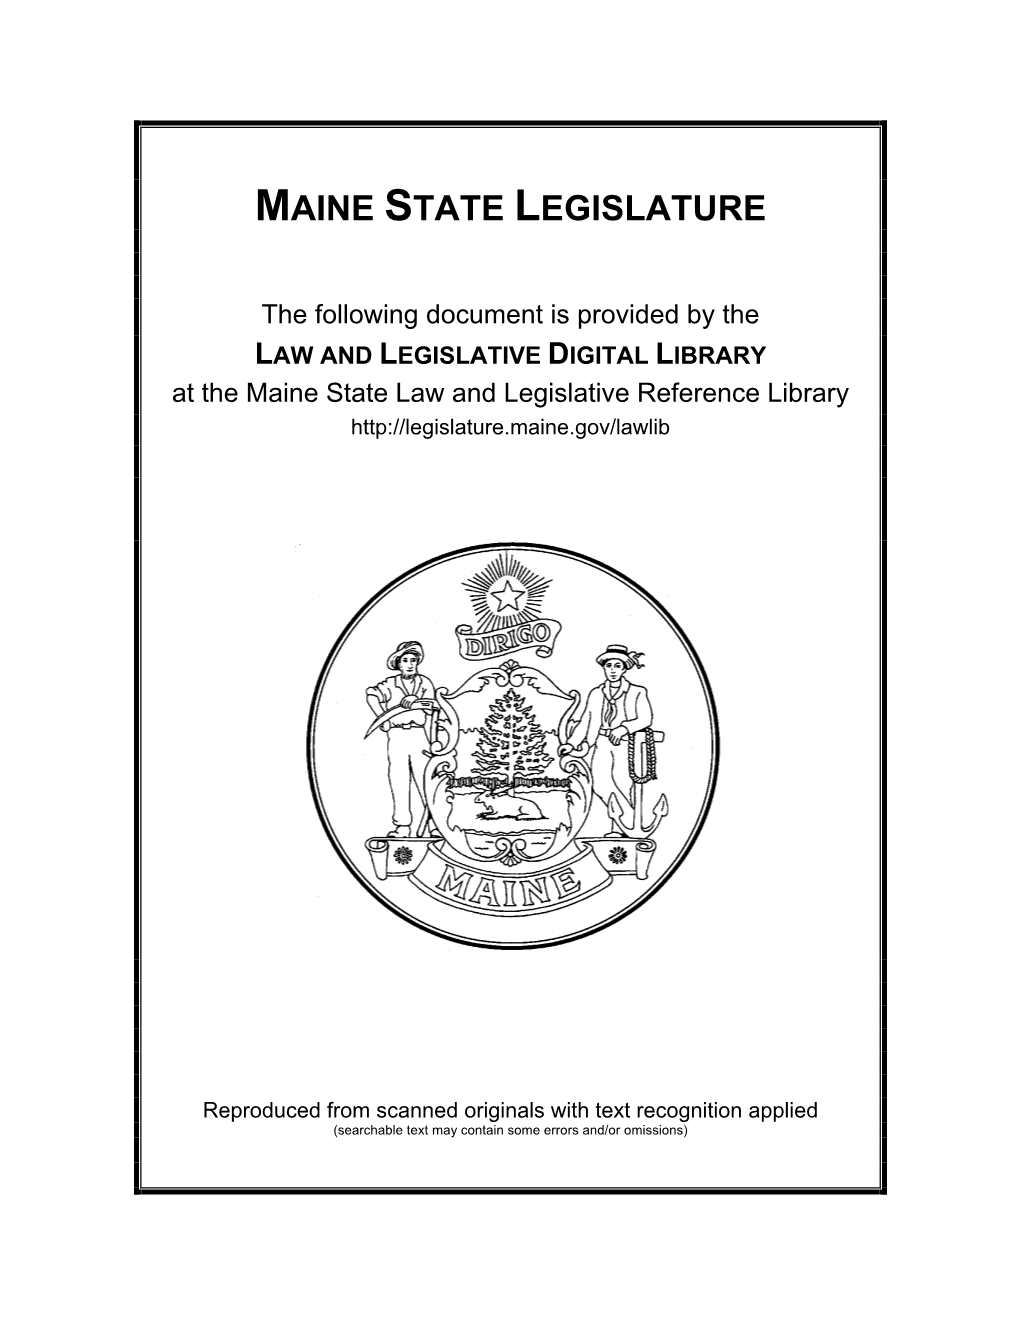 Public Docun1ents of Maine